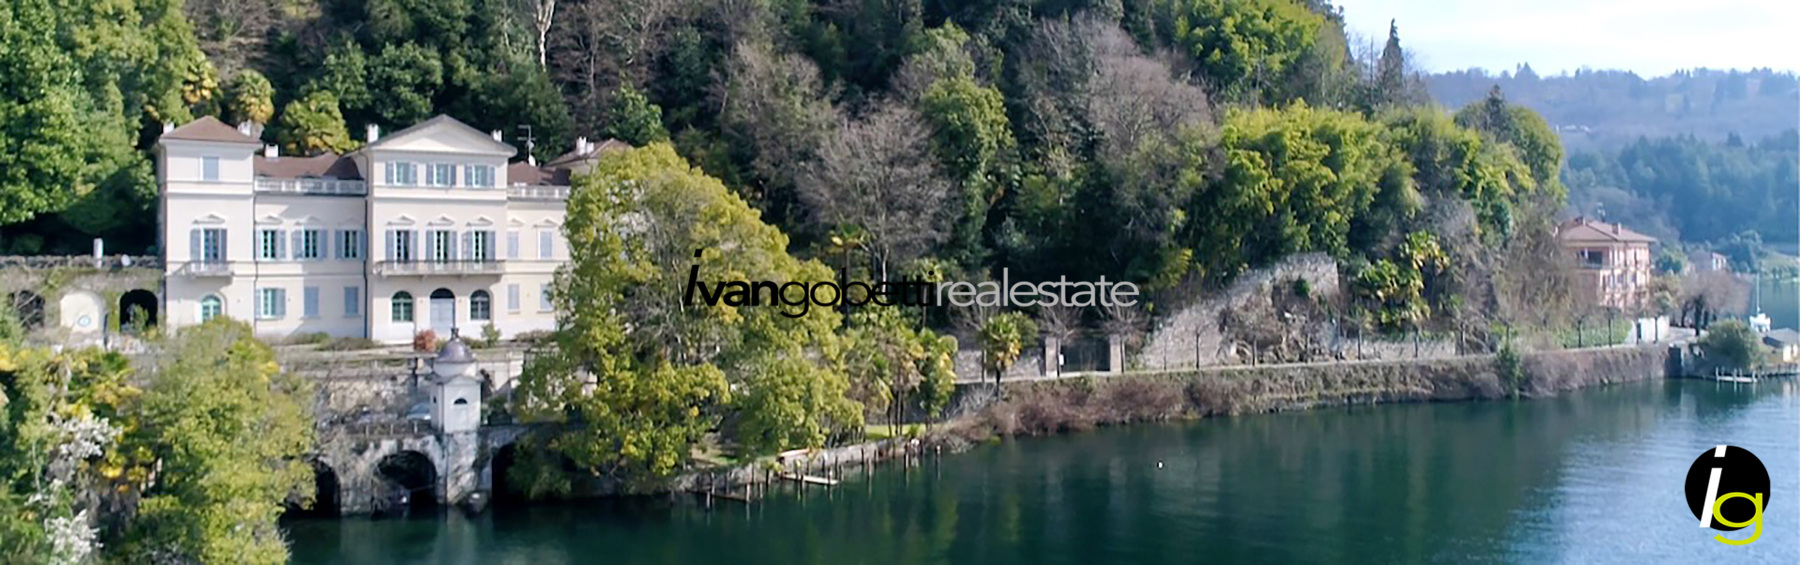 Lago d’Orta ad Orta San Giulio nella magnifica Villa Natta vendesi Attico con accesso a lago<br/><span>Codice prodotto: 200324